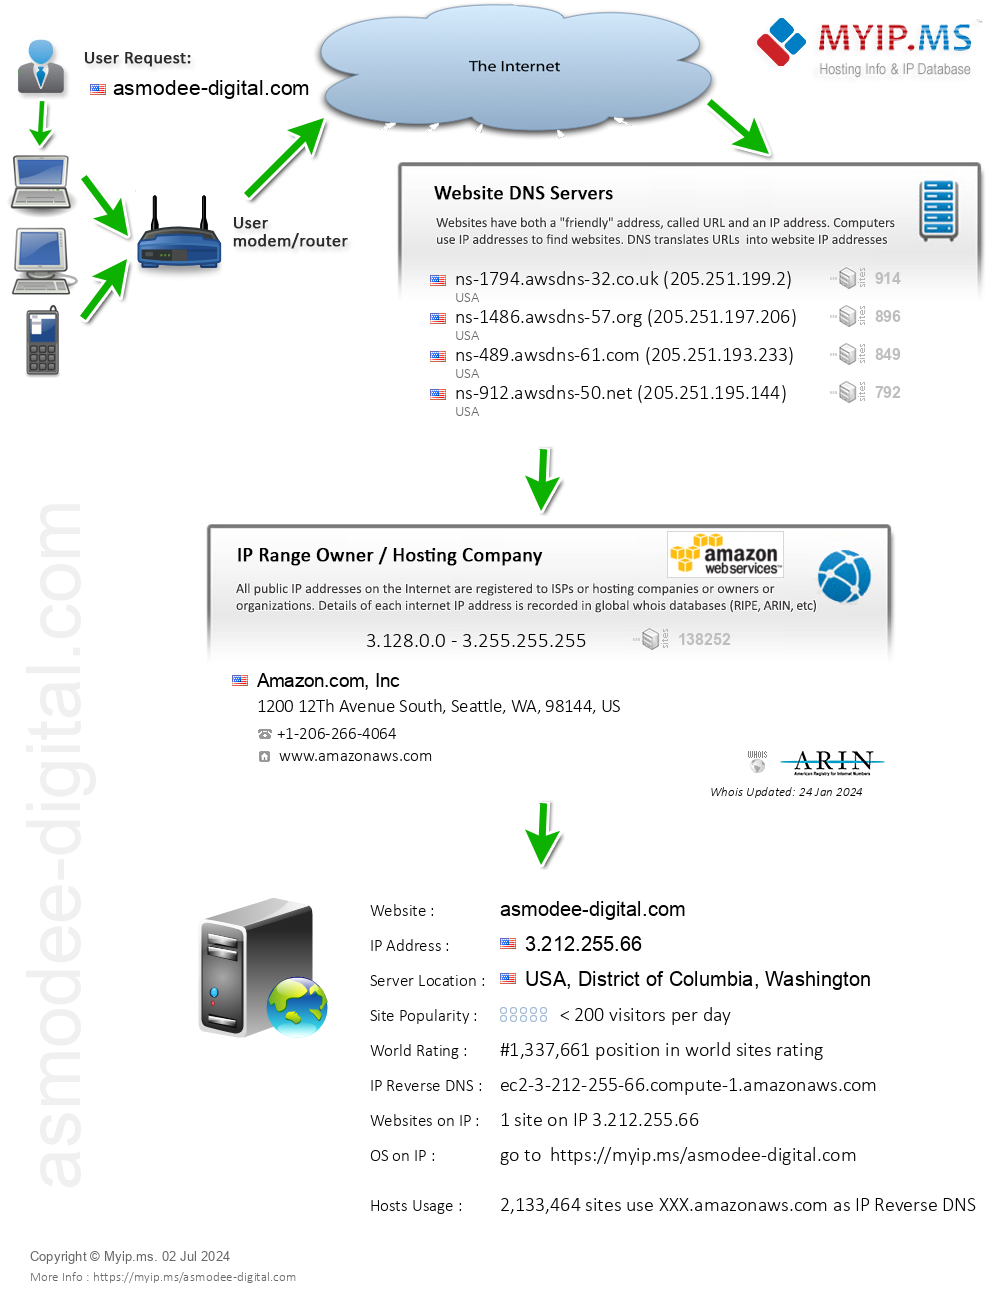 Asmodee-digital.com - Website Hosting Visual IP Diagram